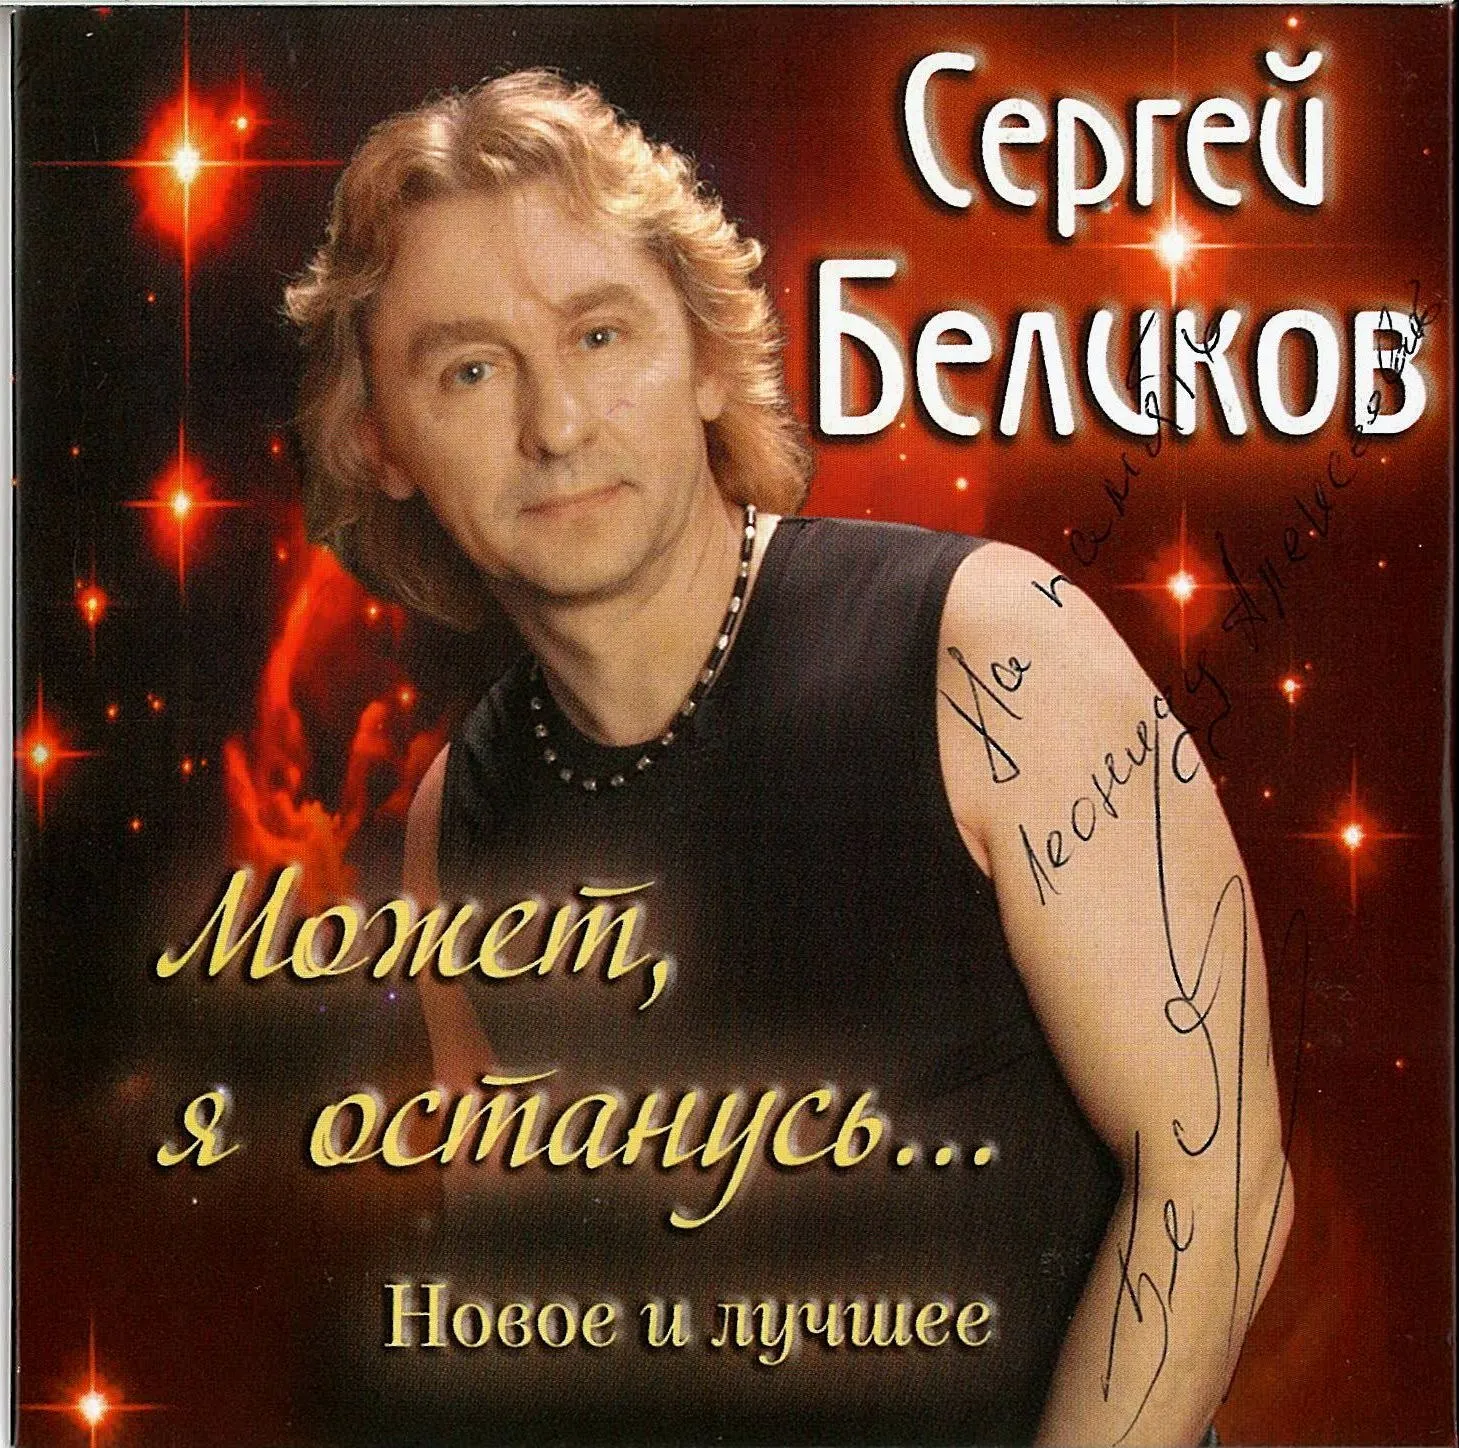 Группа Сергей Беликов